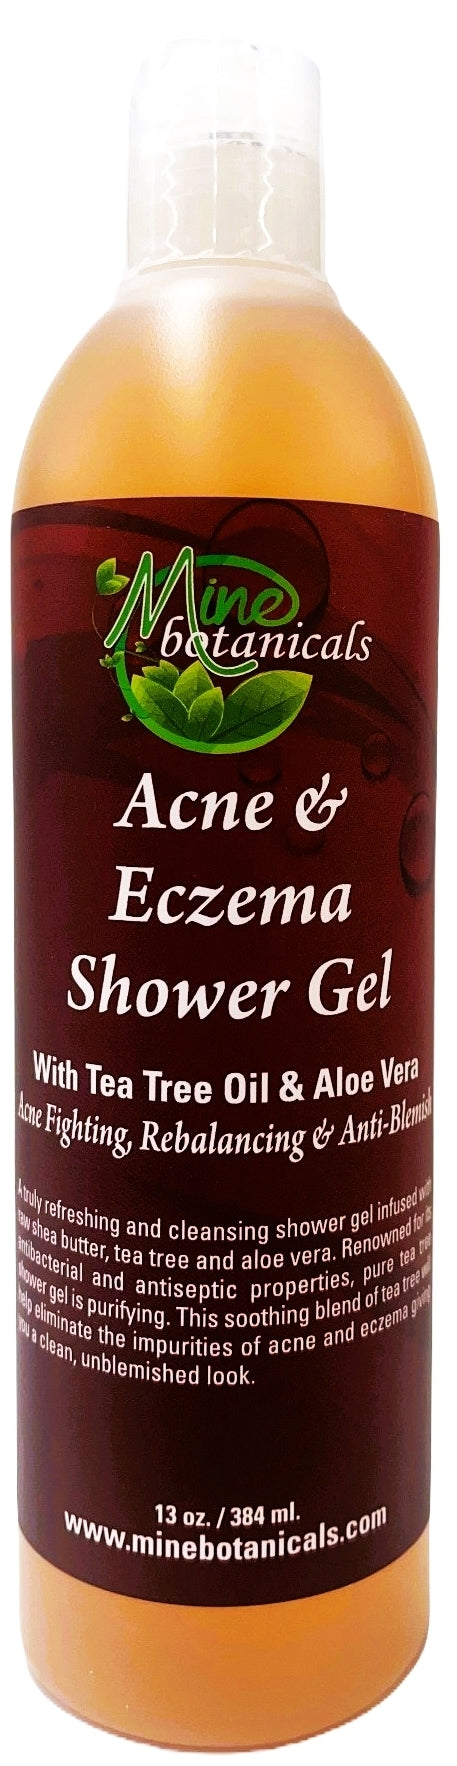 Acne & Eczema Shower Gel